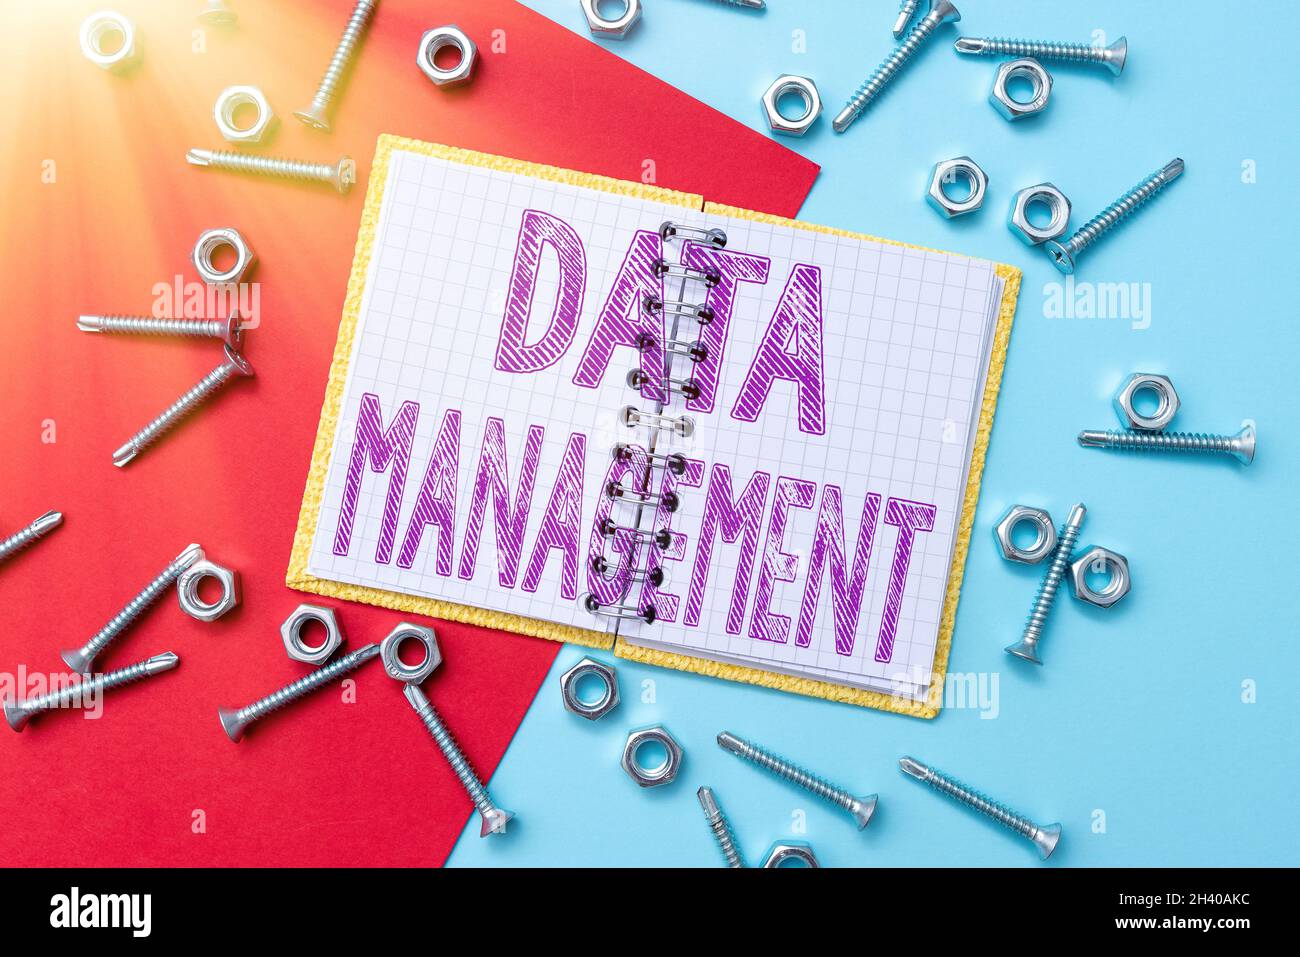 Légende conceptuelle gestion des données.Les disciplines de l'idée d'entreprise liées à la gestion des données comme ressource précieuse atelier Maintenan Banque D'Images